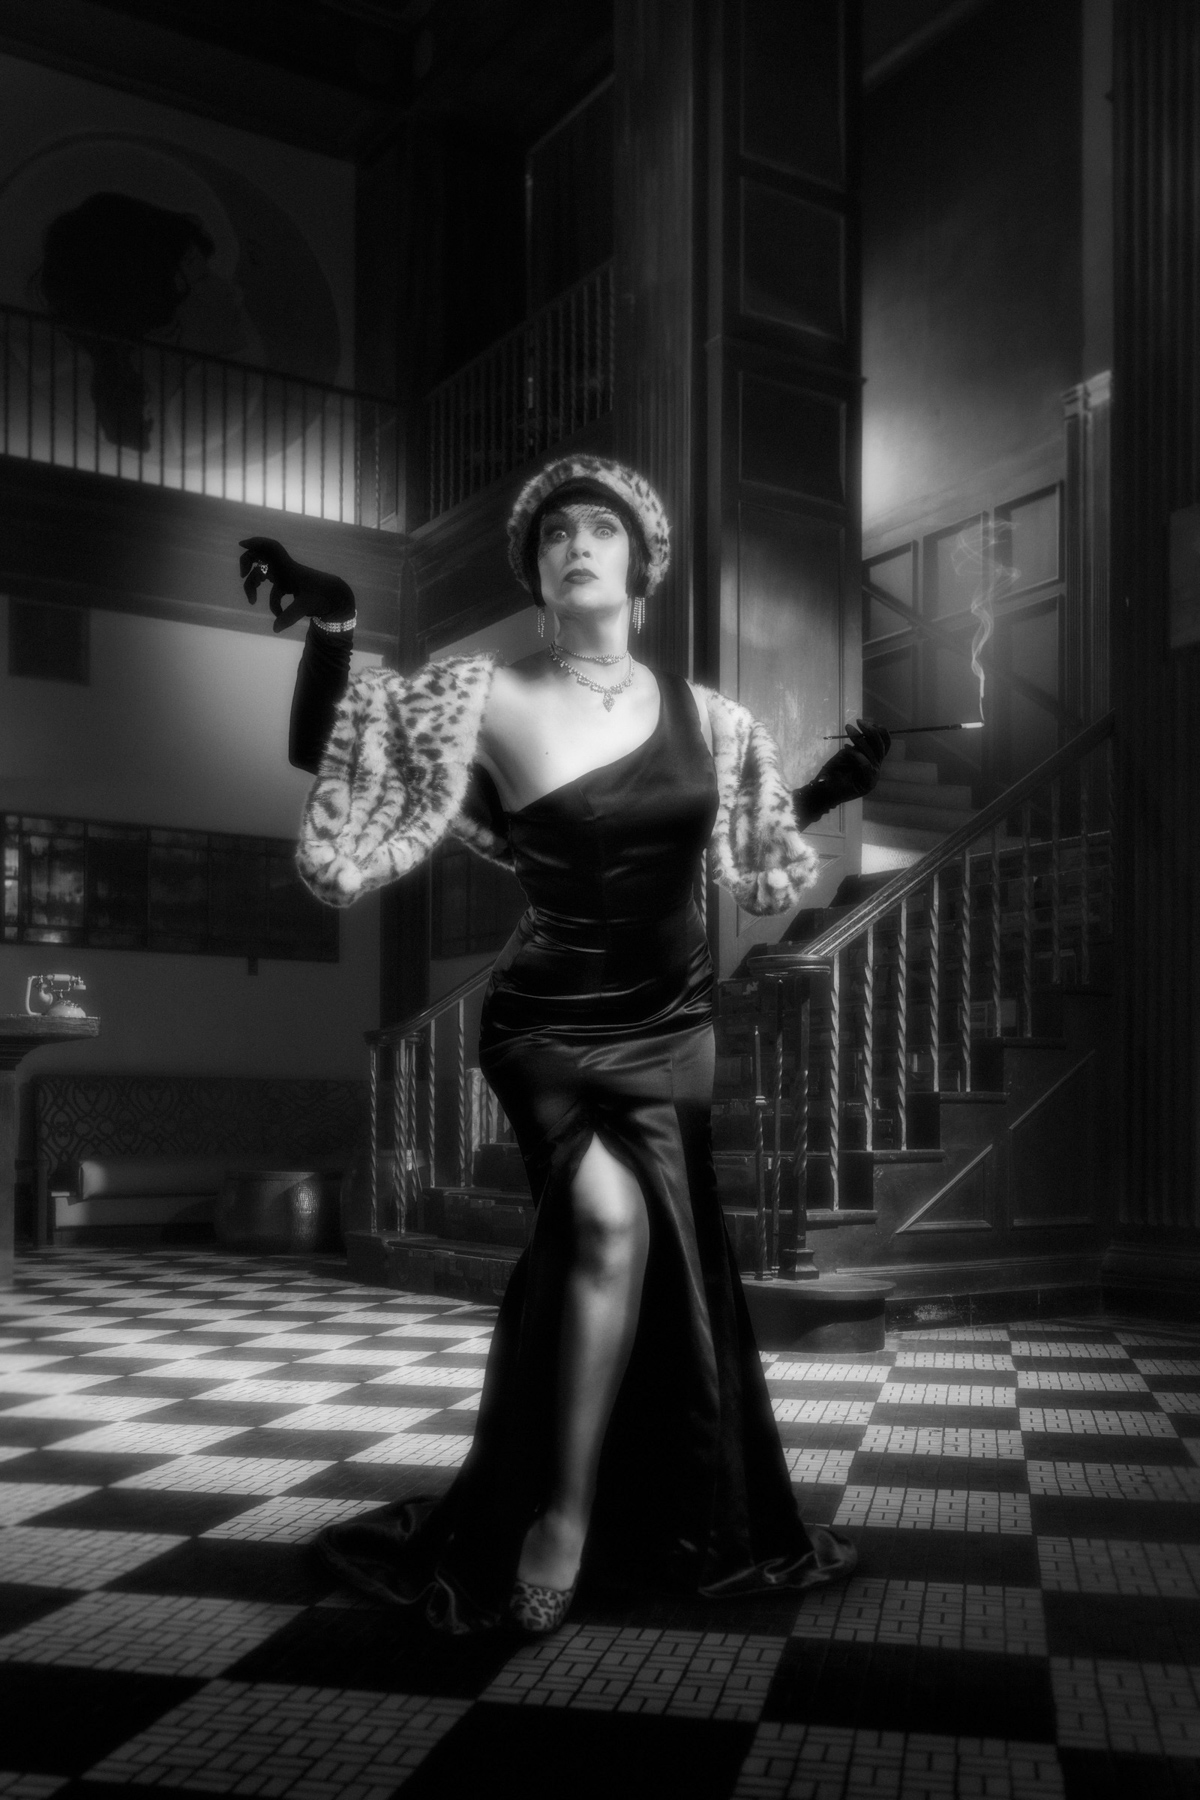 Actor Amber Nash poses as noir hollywood vixen